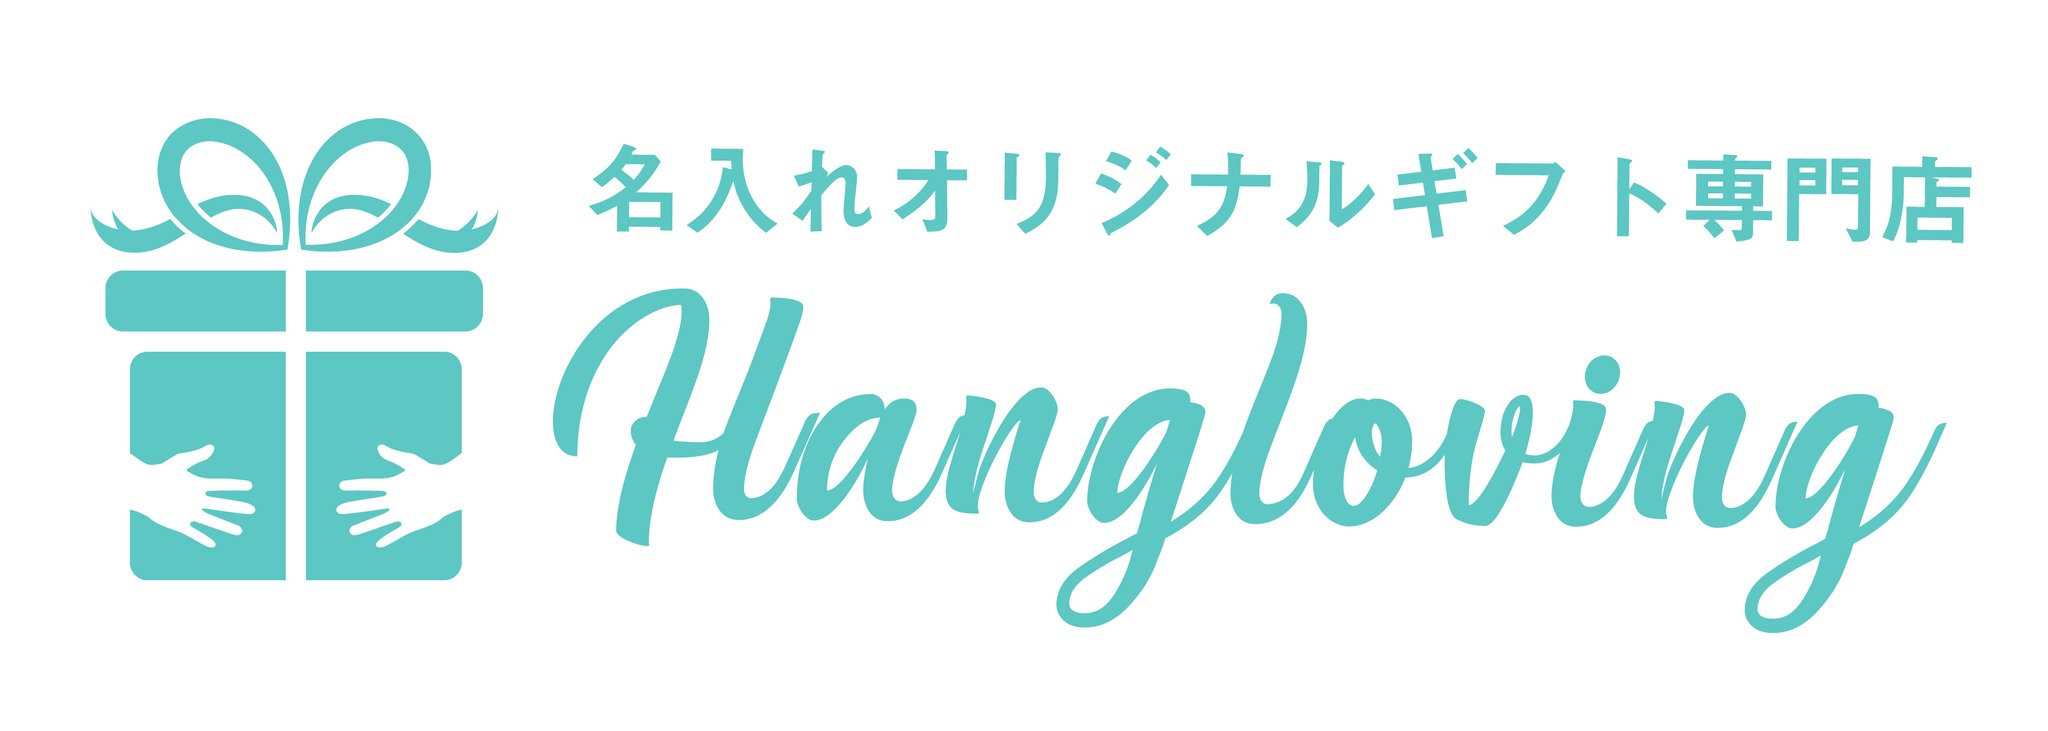 HANGLOVING (ハンラビ)  世界に一つだけのオリジナルギフト